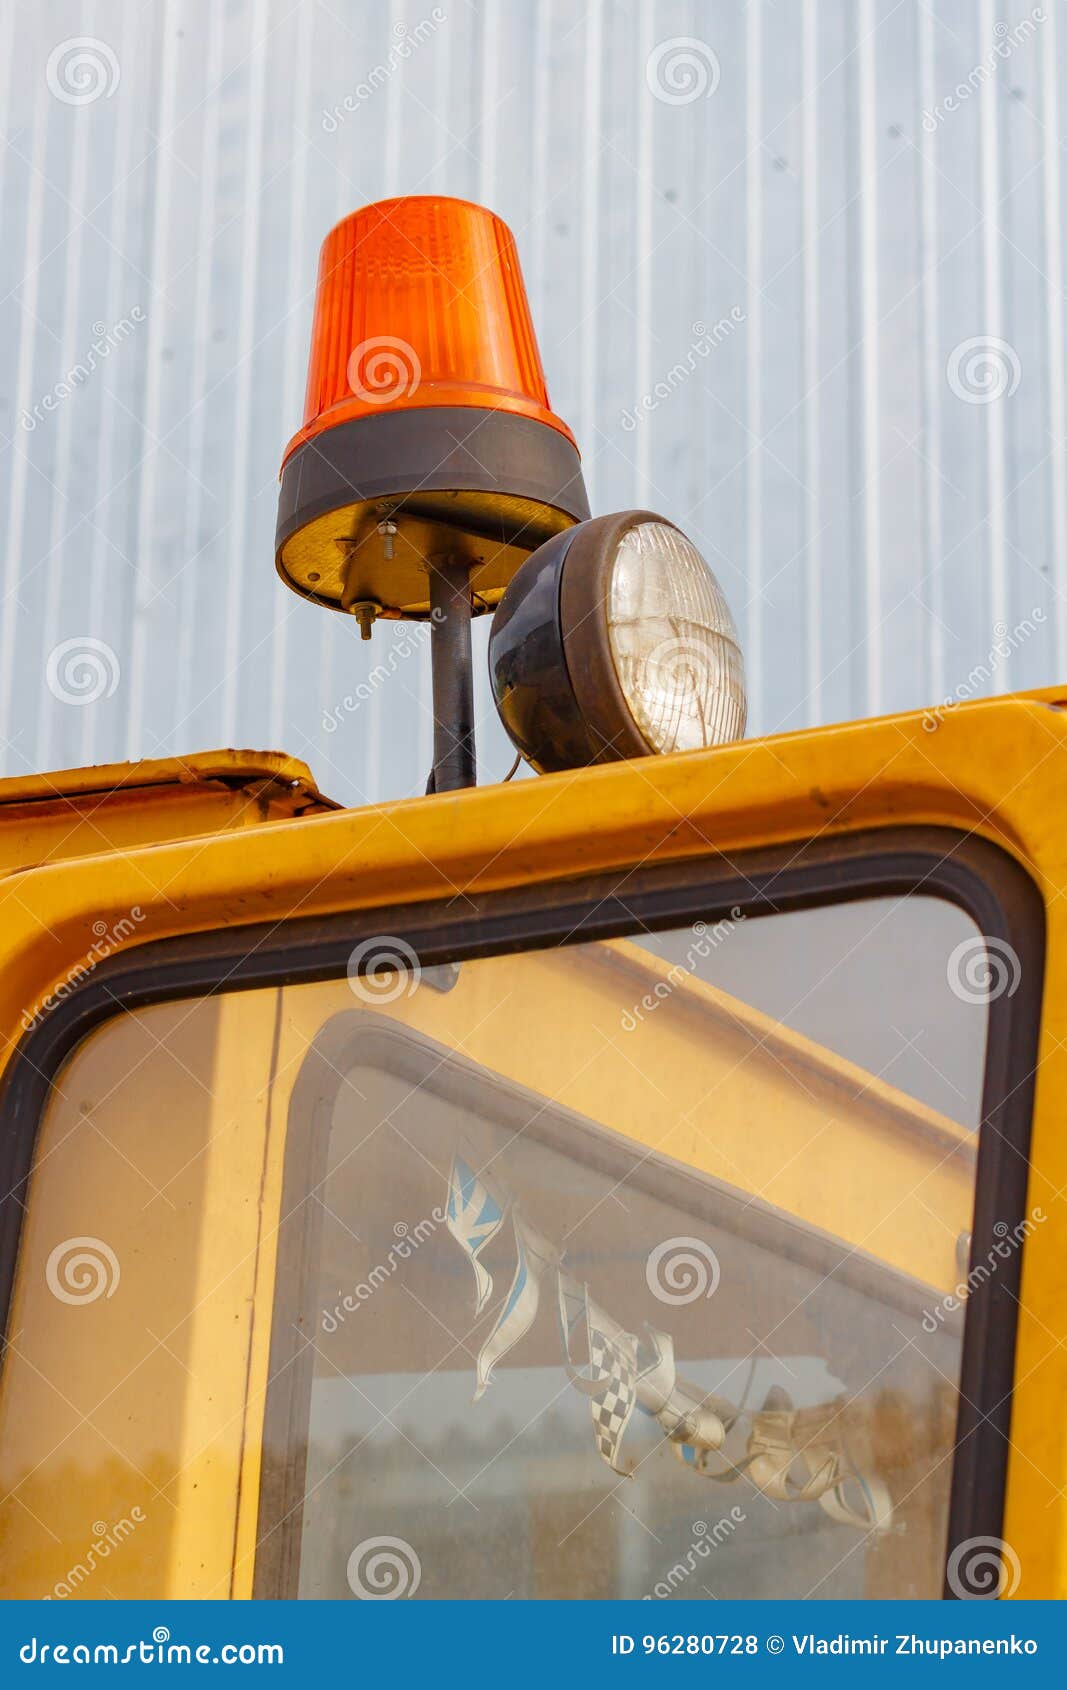 Orange Blinklicht Auf Einer Gabelstaplernahaufnahme Stockfoto - Bild von  hydraulisch, heber: 96280728